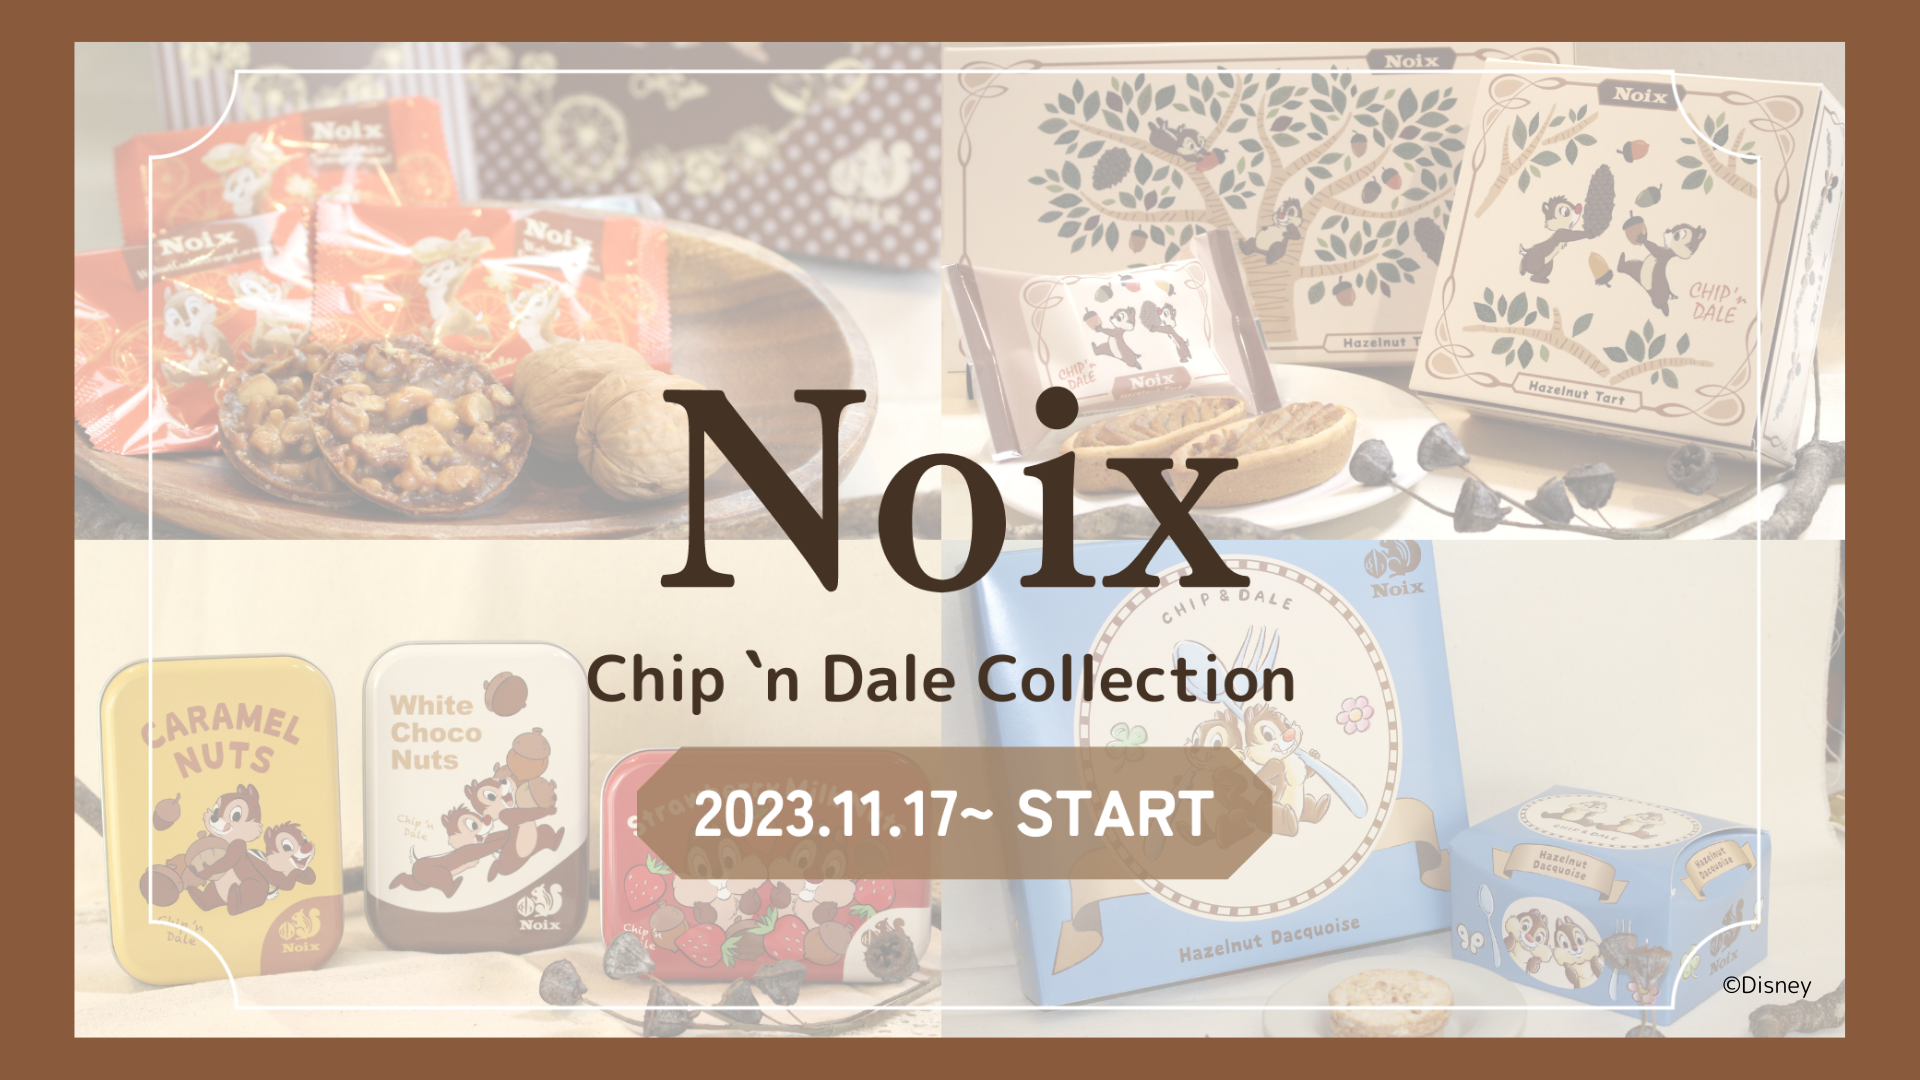 木の実のスイーツ専門店「Noix(ノワ)」から
『Chip ‘n Dale Collection
(チップアンドデールコレクション)』を
2023年11月17日より販売スタート！